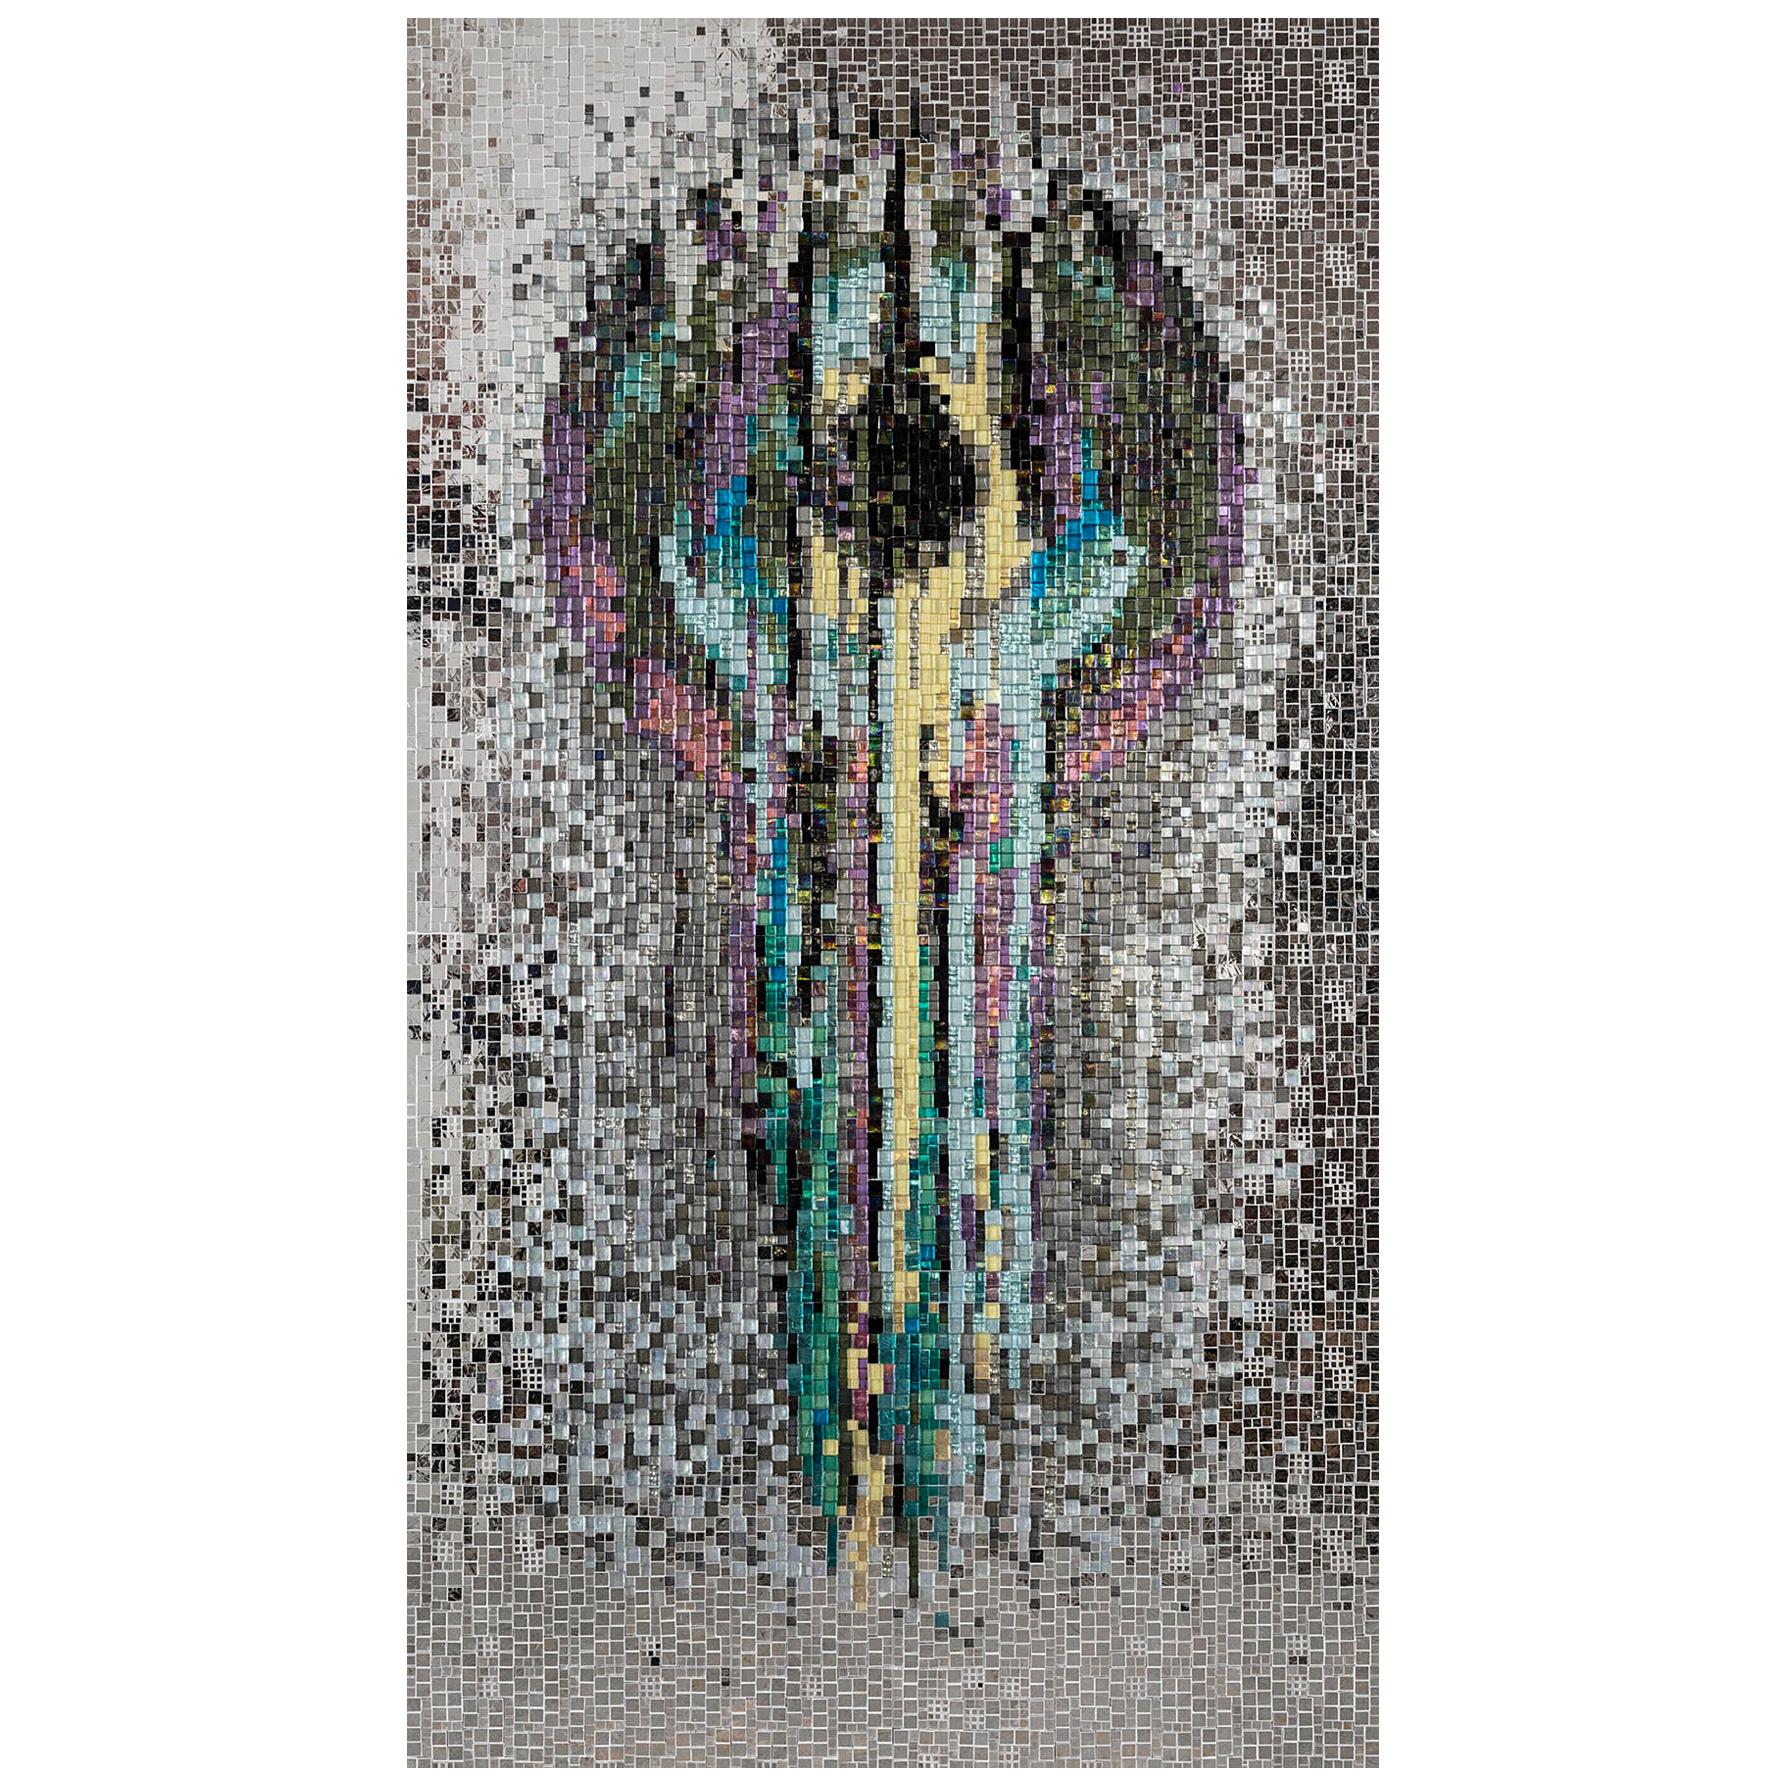 Artistic Mosaic Handmade on Aluminum Panel Dimension und Farben anpassbar im Angebot